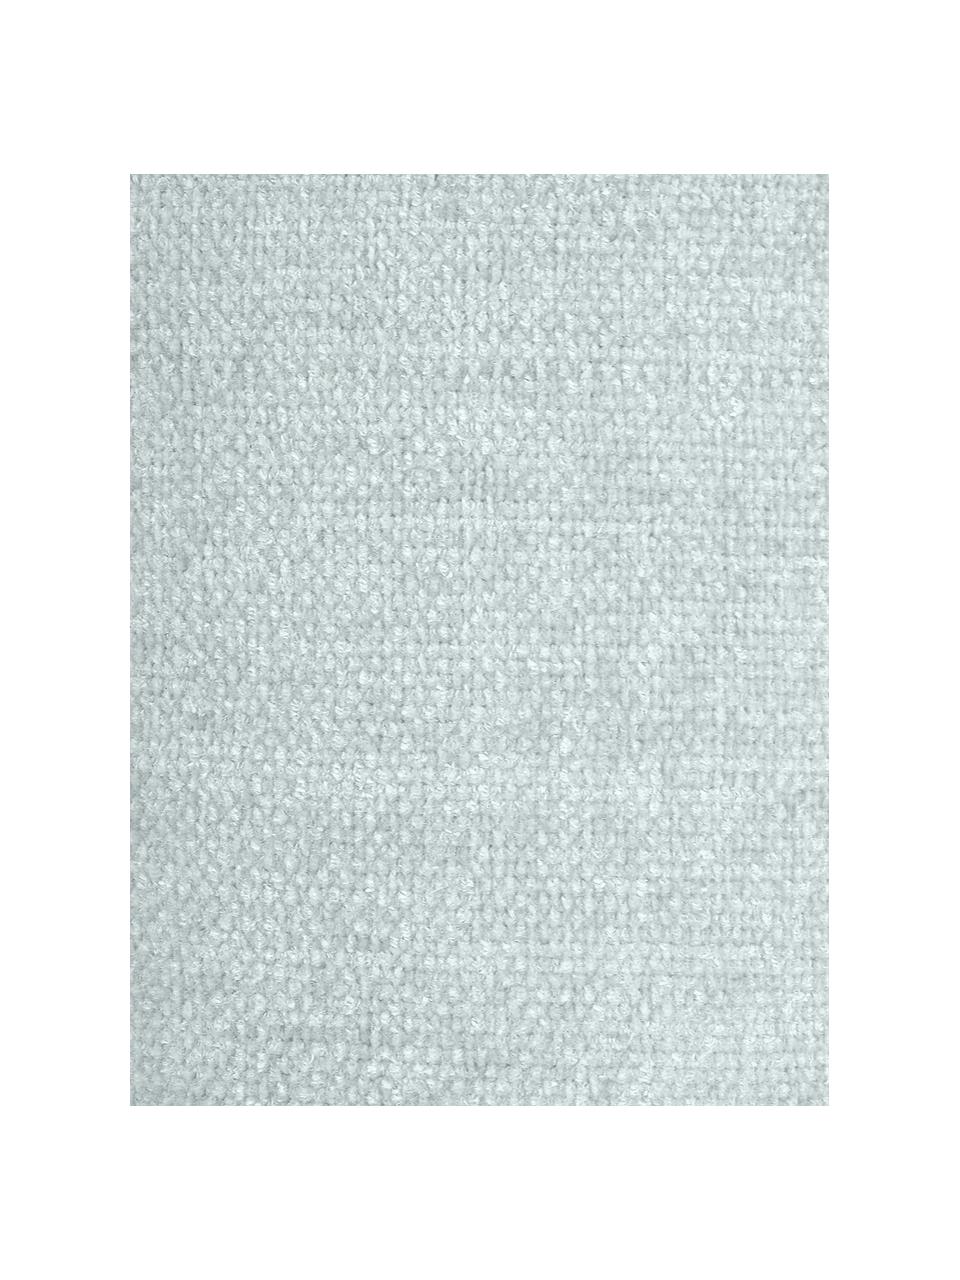 Weiches Chenille-Kissen Chila mit Quasten, mit Inlett, Bezug: 95% Polyester, 5% Baumwol, Blaugrau, 30 x 50 cm